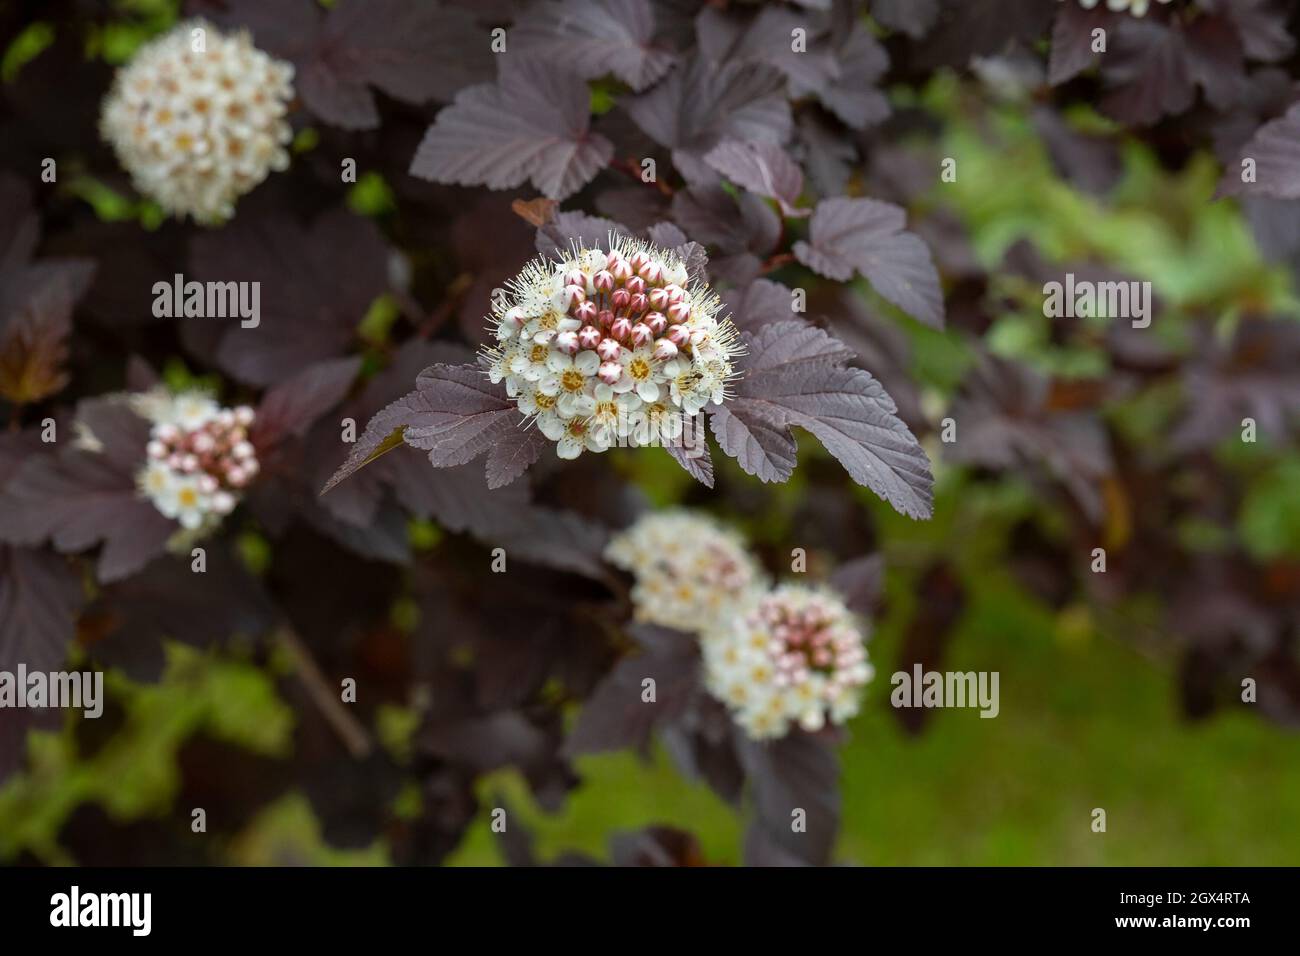 Flowers of an ornamental garden shrub of Vine-leaved spirea with dark burgundy leaves. Stock Photo